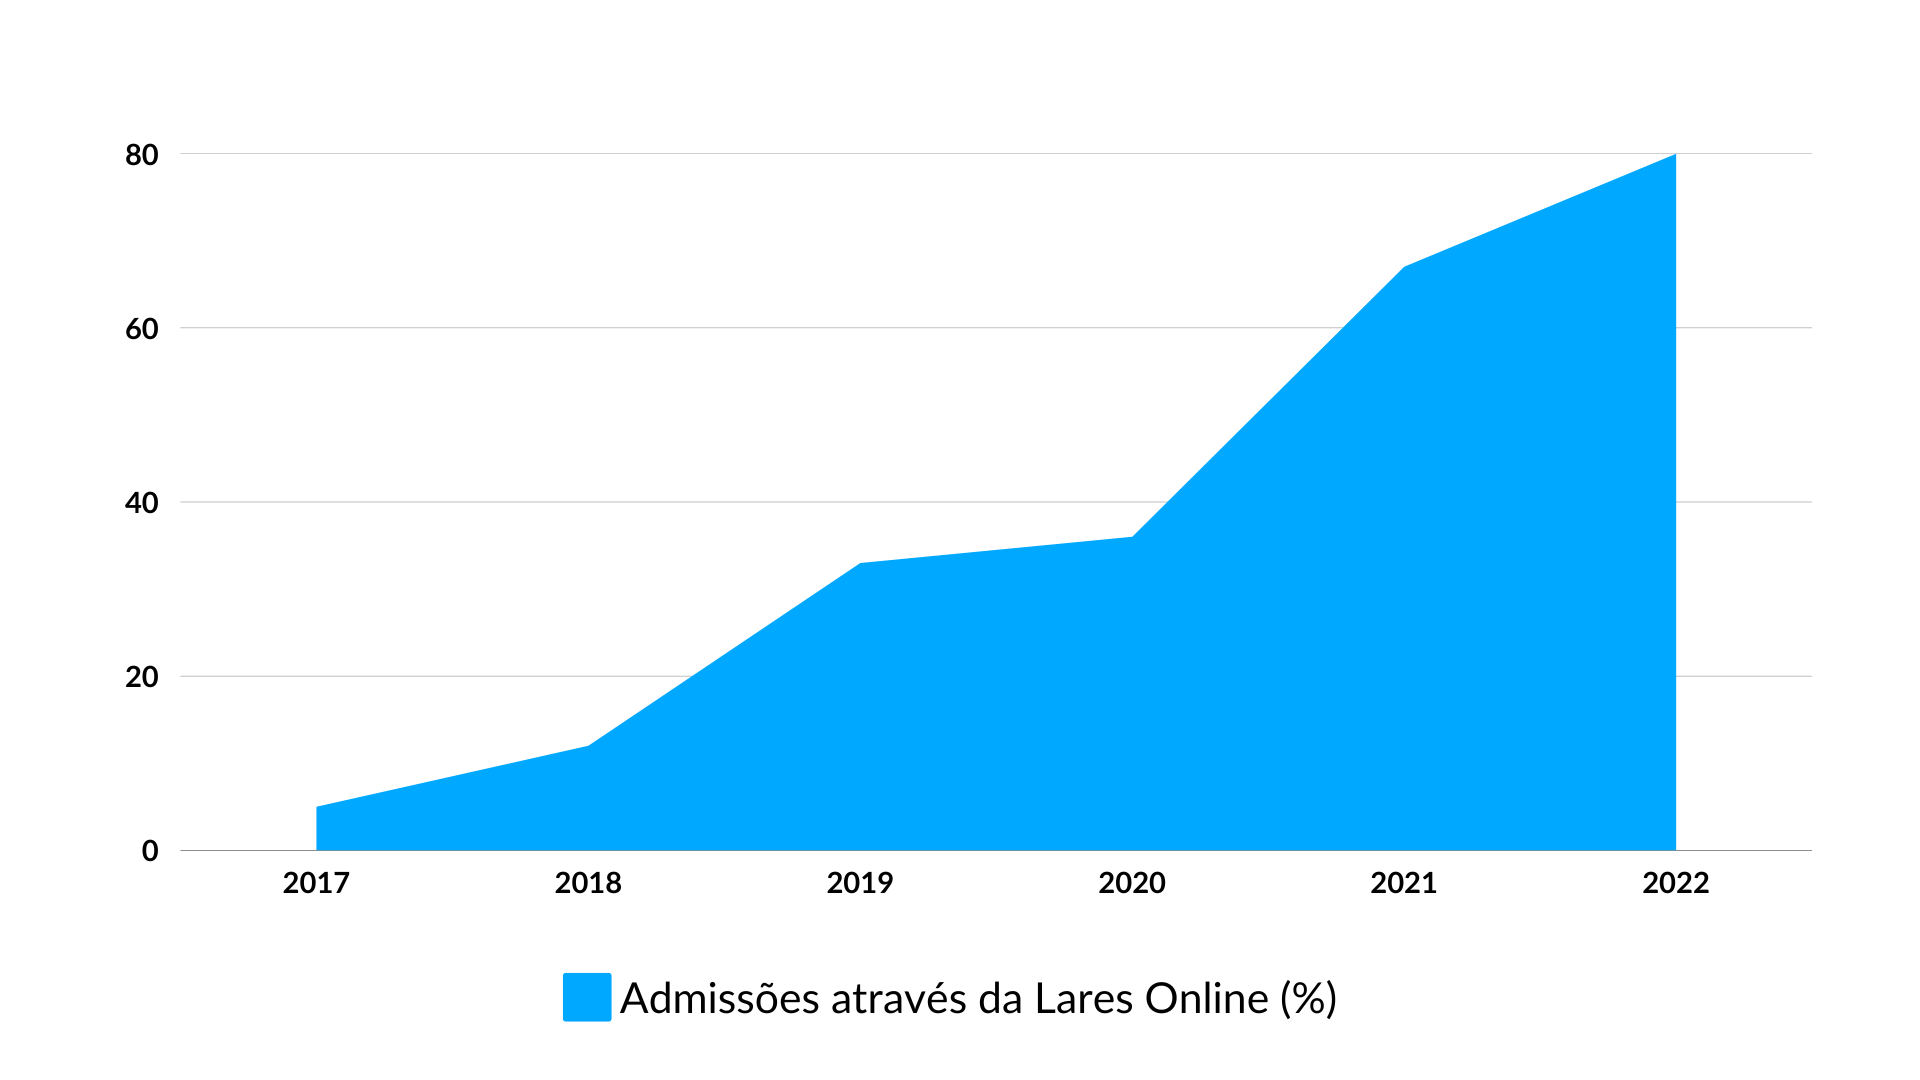 Percentagem de admissões por intermédio Lares Online